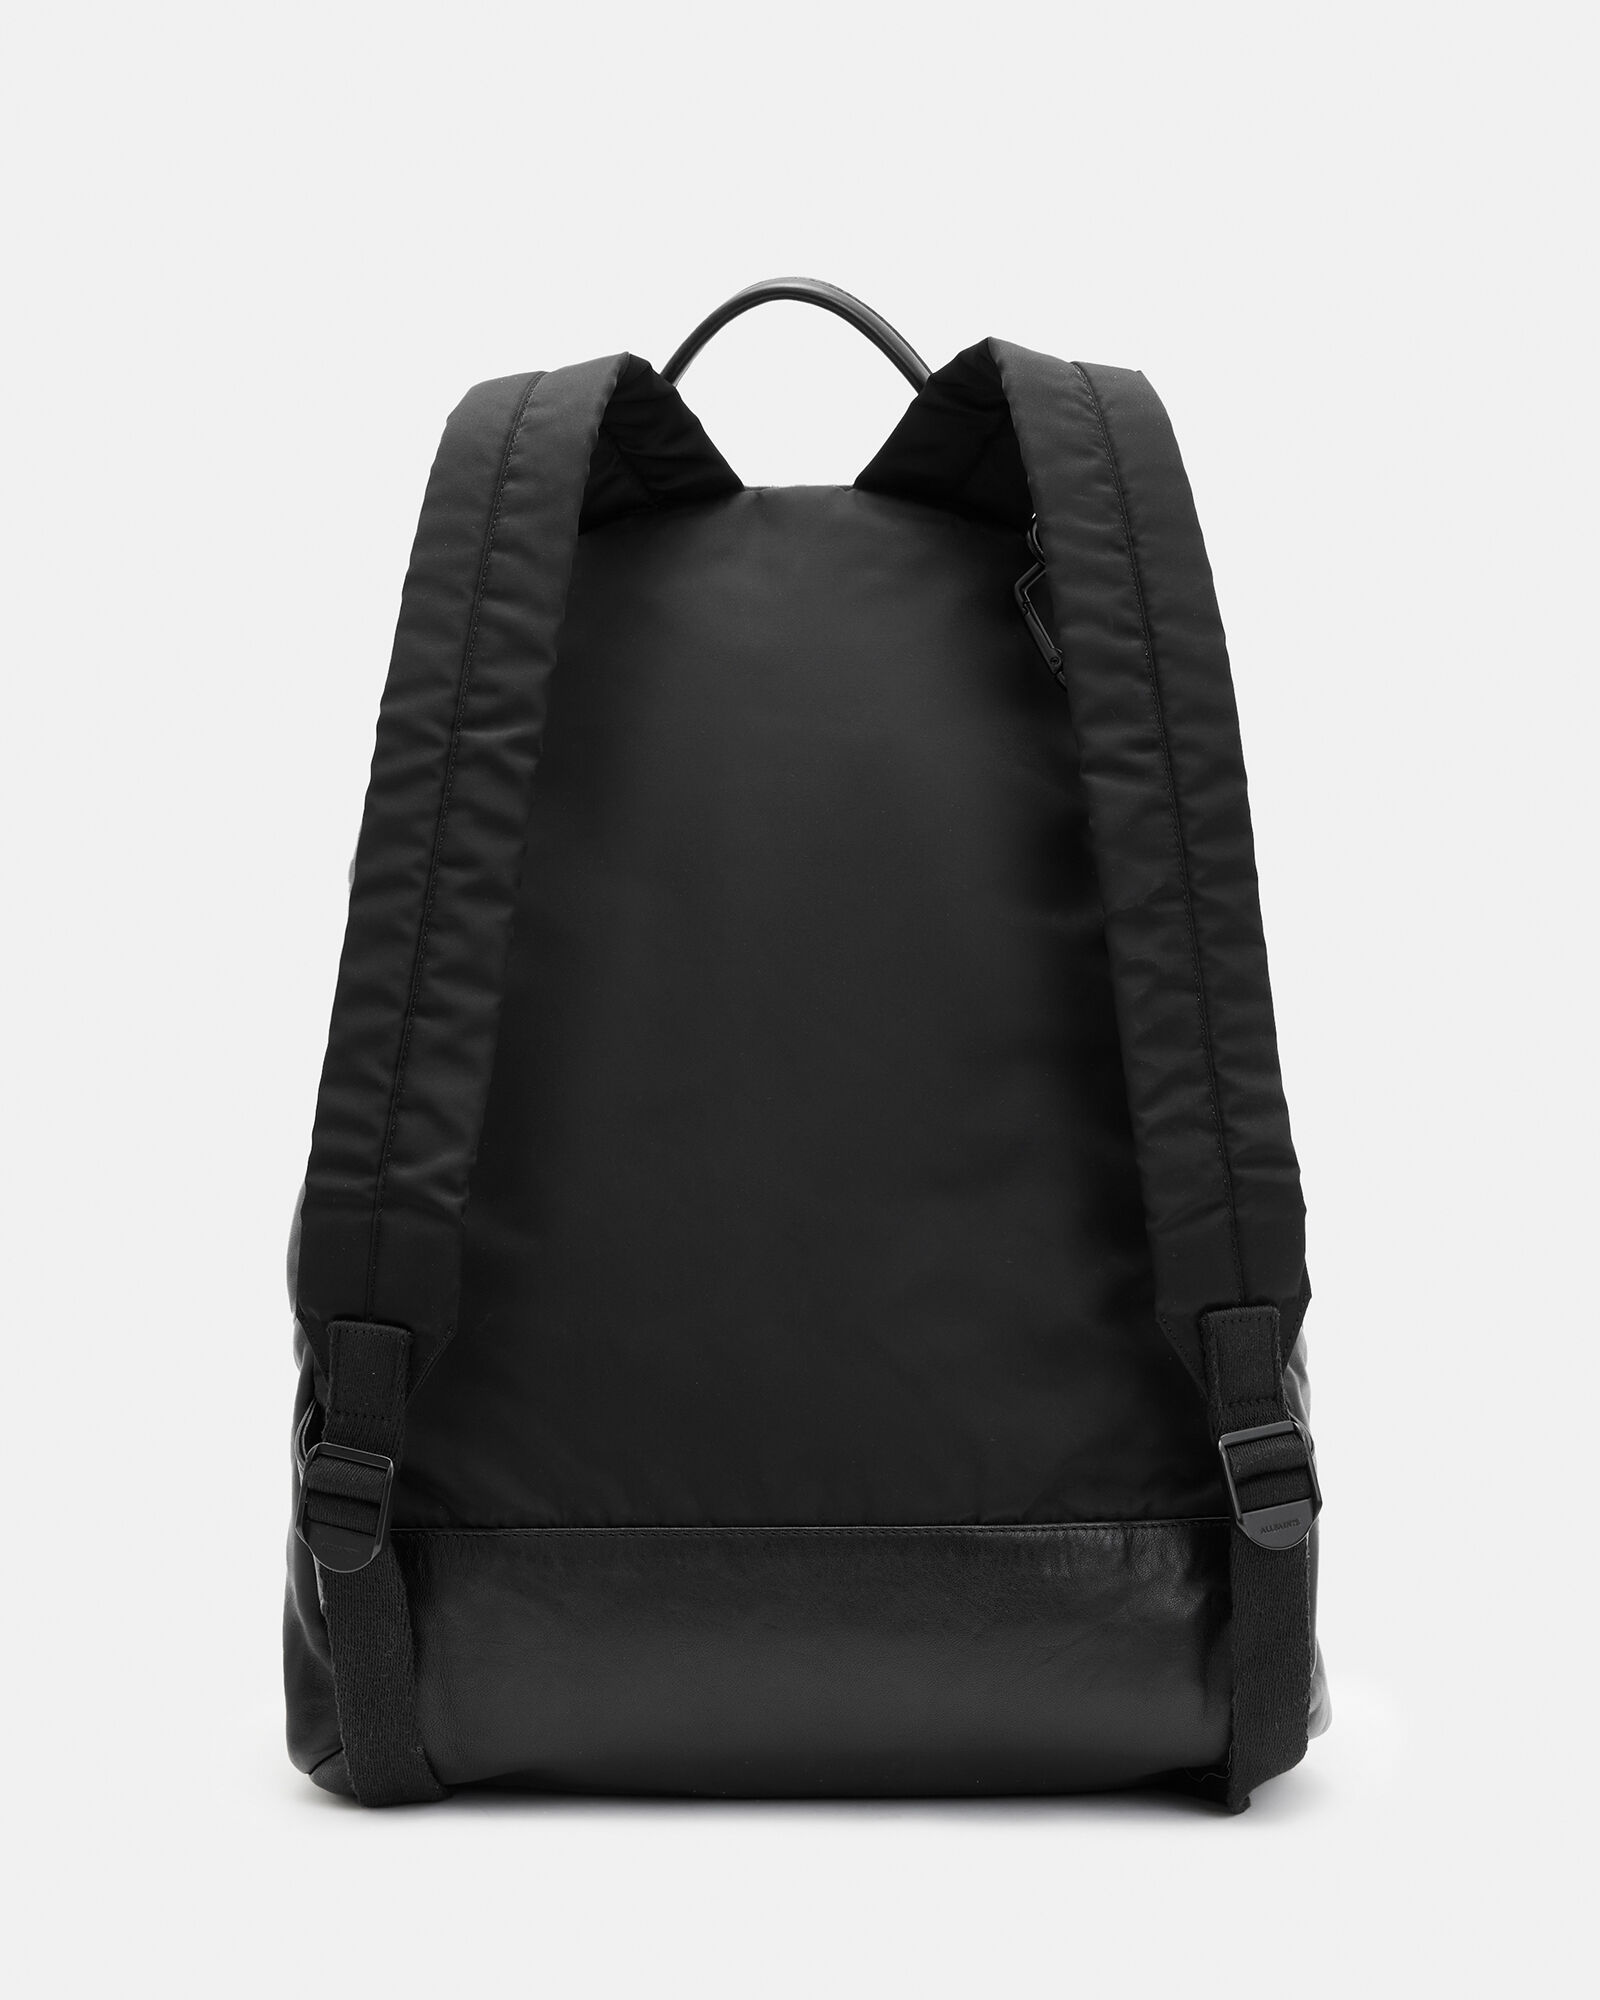 Carabiner Leather Backpack Black | ALLSAINTS